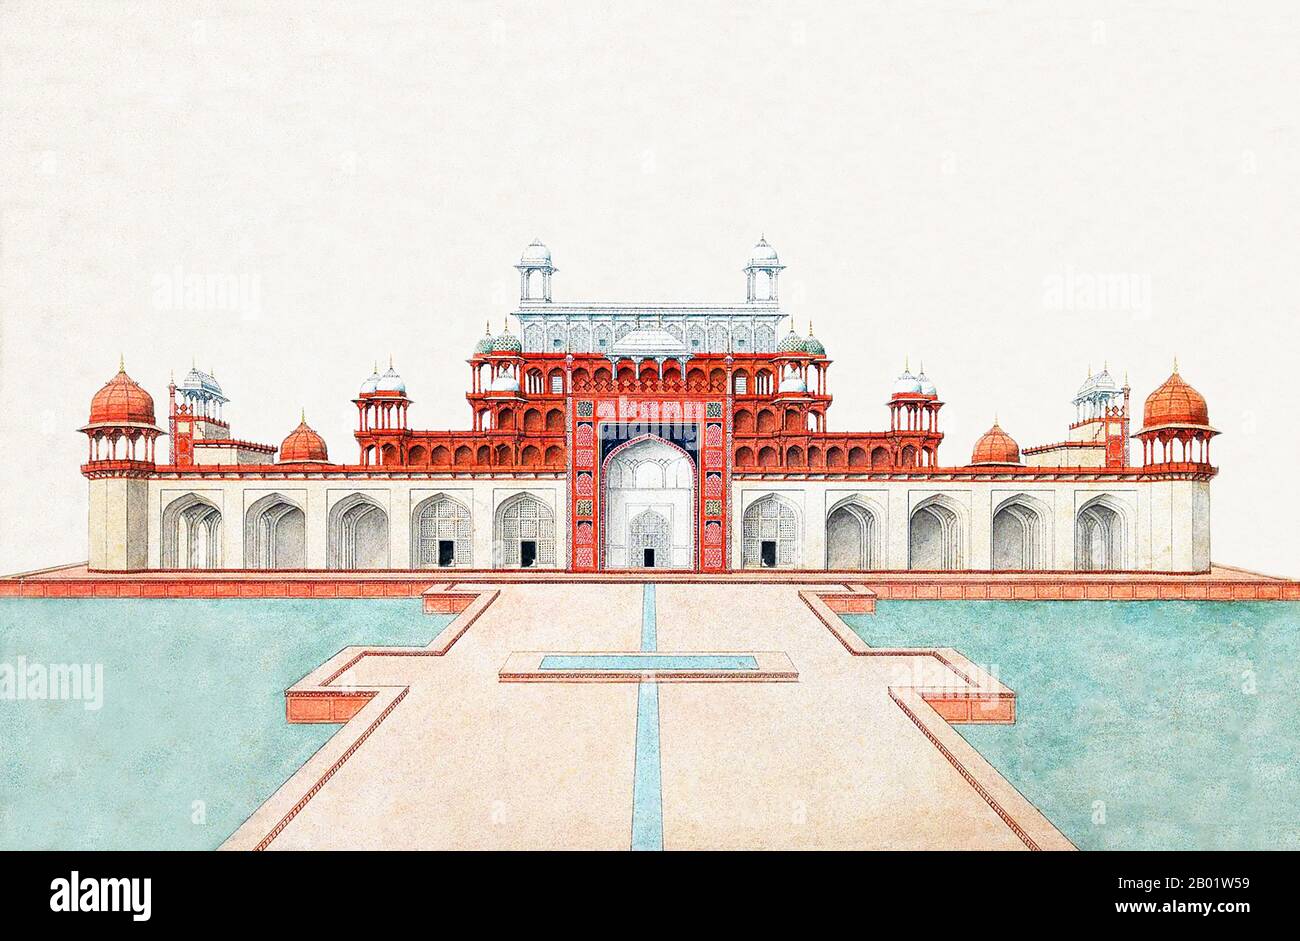 Inde : le mausolée du début du XVIIe siècle de l'empereur moghol Akbar. Aquarelle par la Compagnie des Indes orientales, XIXe siècle. Le tombeau du troisième empereur moghol Akbar (R. 1556-1605) est un chef-d'œuvre architectural moghol important, construit en 1605-1613 et situé sur 119 acres de terrain à Sikandra, une banlieue d'Agra, Uttar Pradesh, Inde. L'empereur Akbar lui-même a commencé sa construction vers 1600, selon la tradition d'Asie centrale pour commencer la construction de sa tombe pendant sa vie. Akbar lui-même a planifié sa propre tombe et a choisi un site approprié. Il a été complété par son fils. Banque D'Images